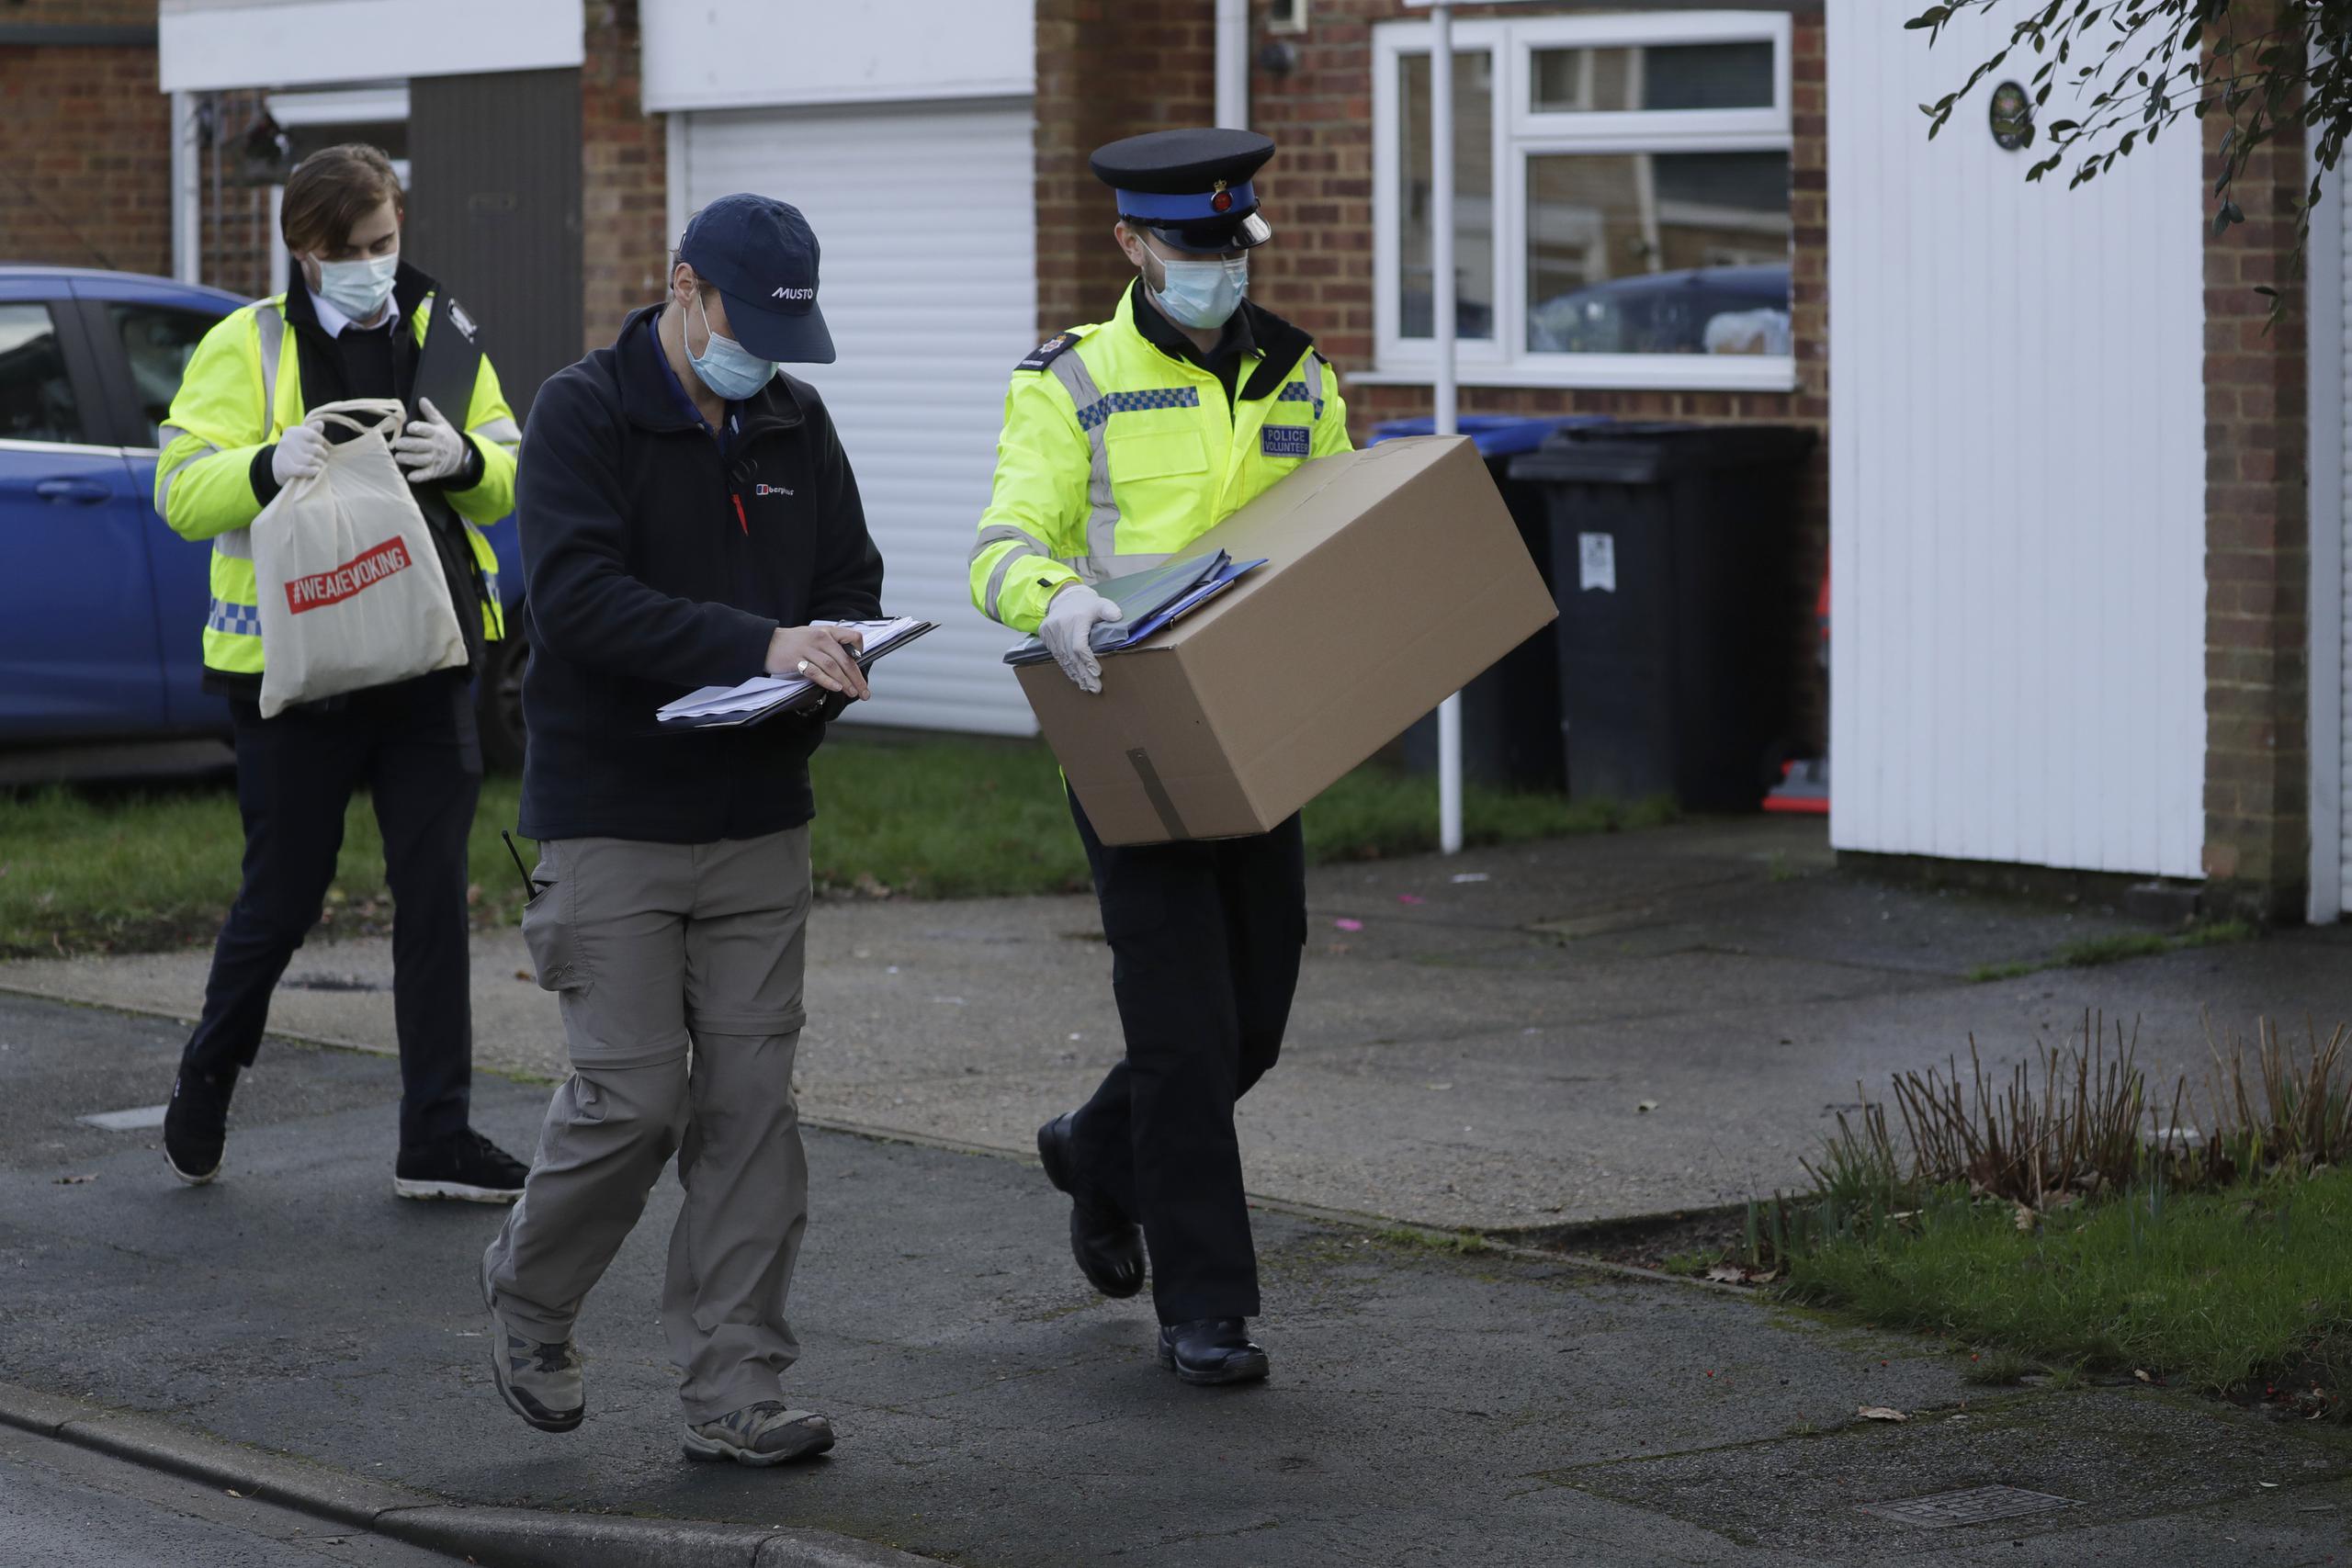 Un policía carga una caja con kits para realizar pruebas de COVID-19 en Woking, Inglaterra.